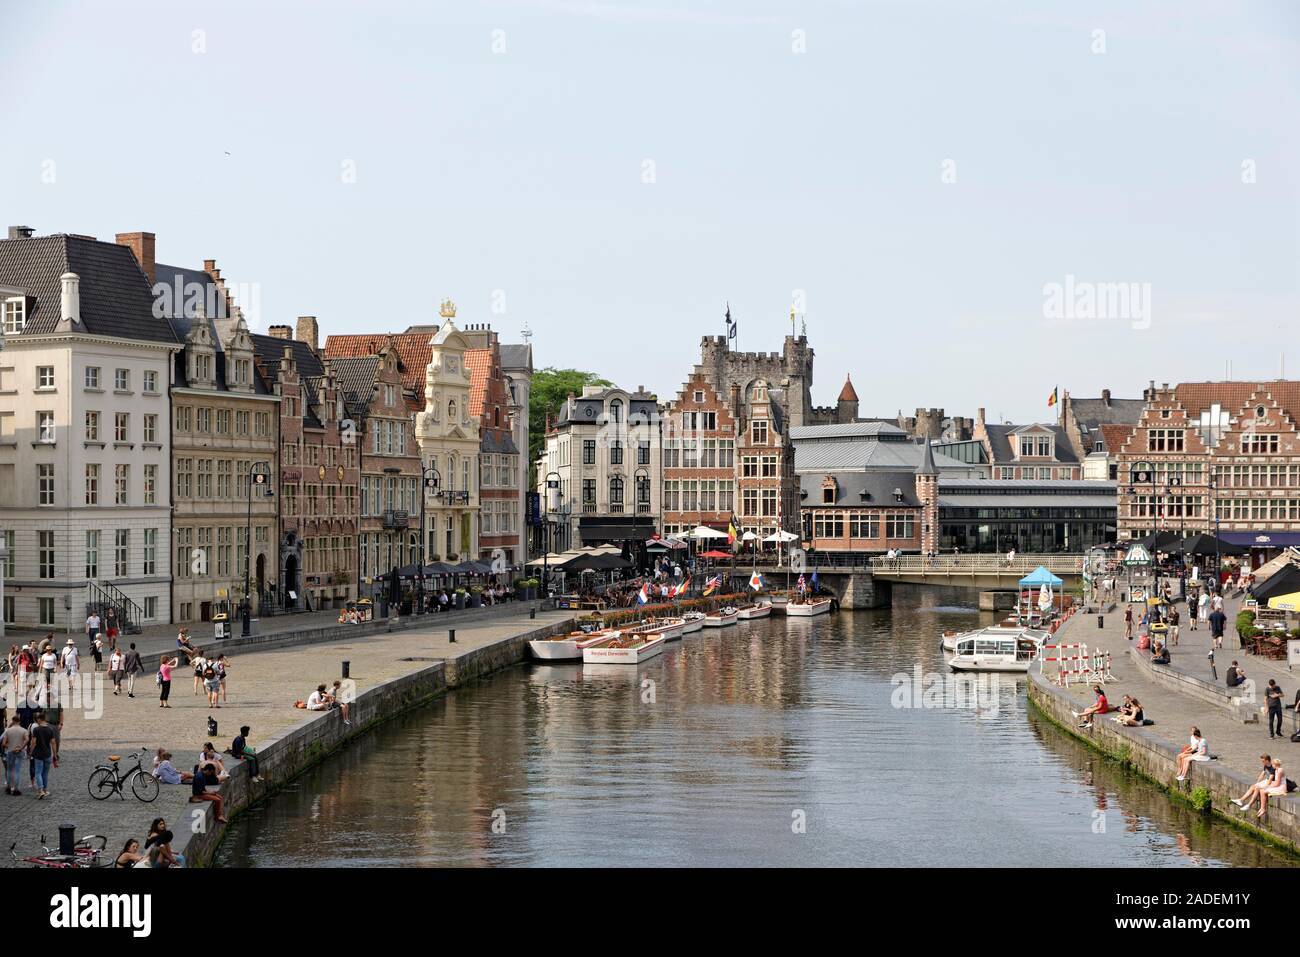 Rangée de maisons au canal, Binnenstad, Gand, Flandre orientale, Belgique Banque D'Images